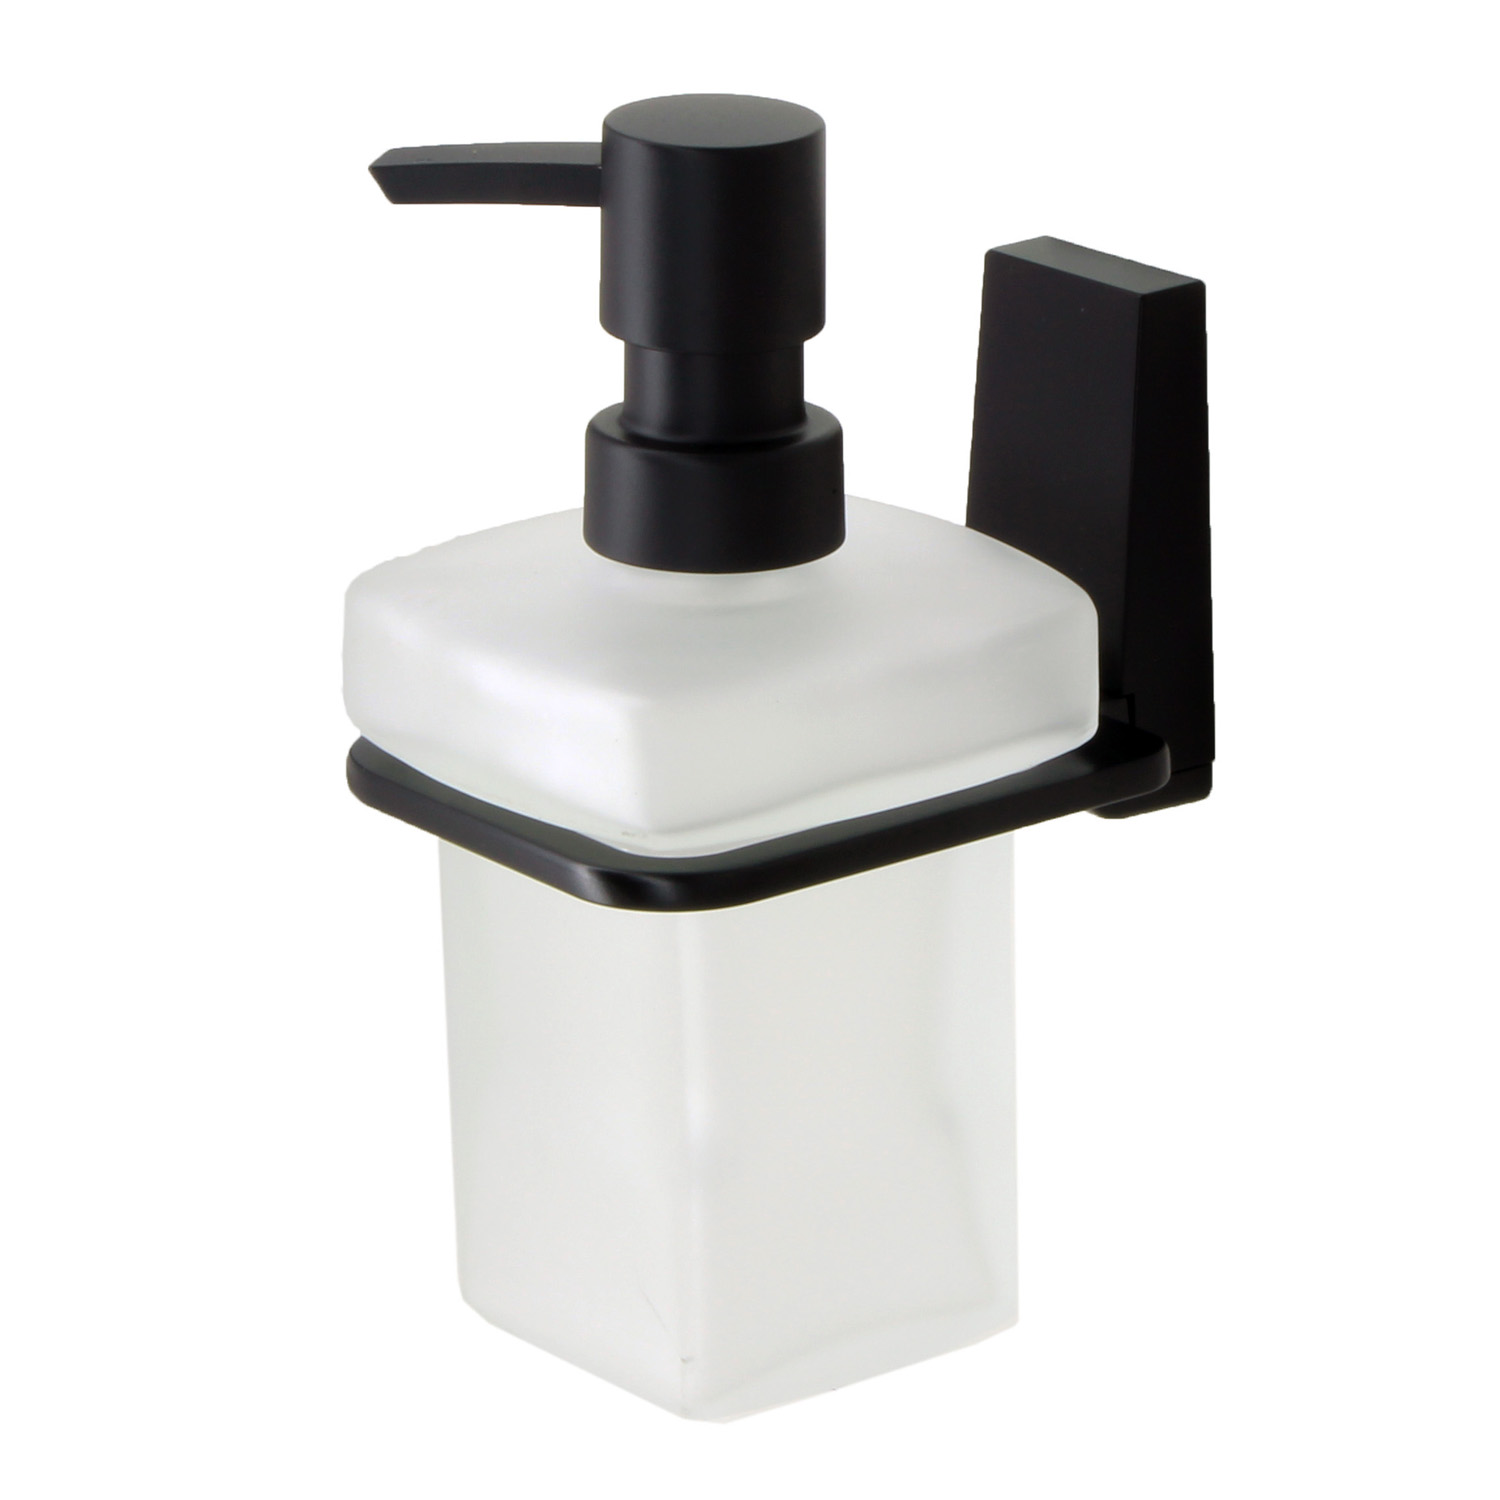 Дозатор для жидкого мыла Wasserkraft Abens чёрный 7,8х11,5х15,5 см набор маникюрный 6 предметов в футляре чёрный